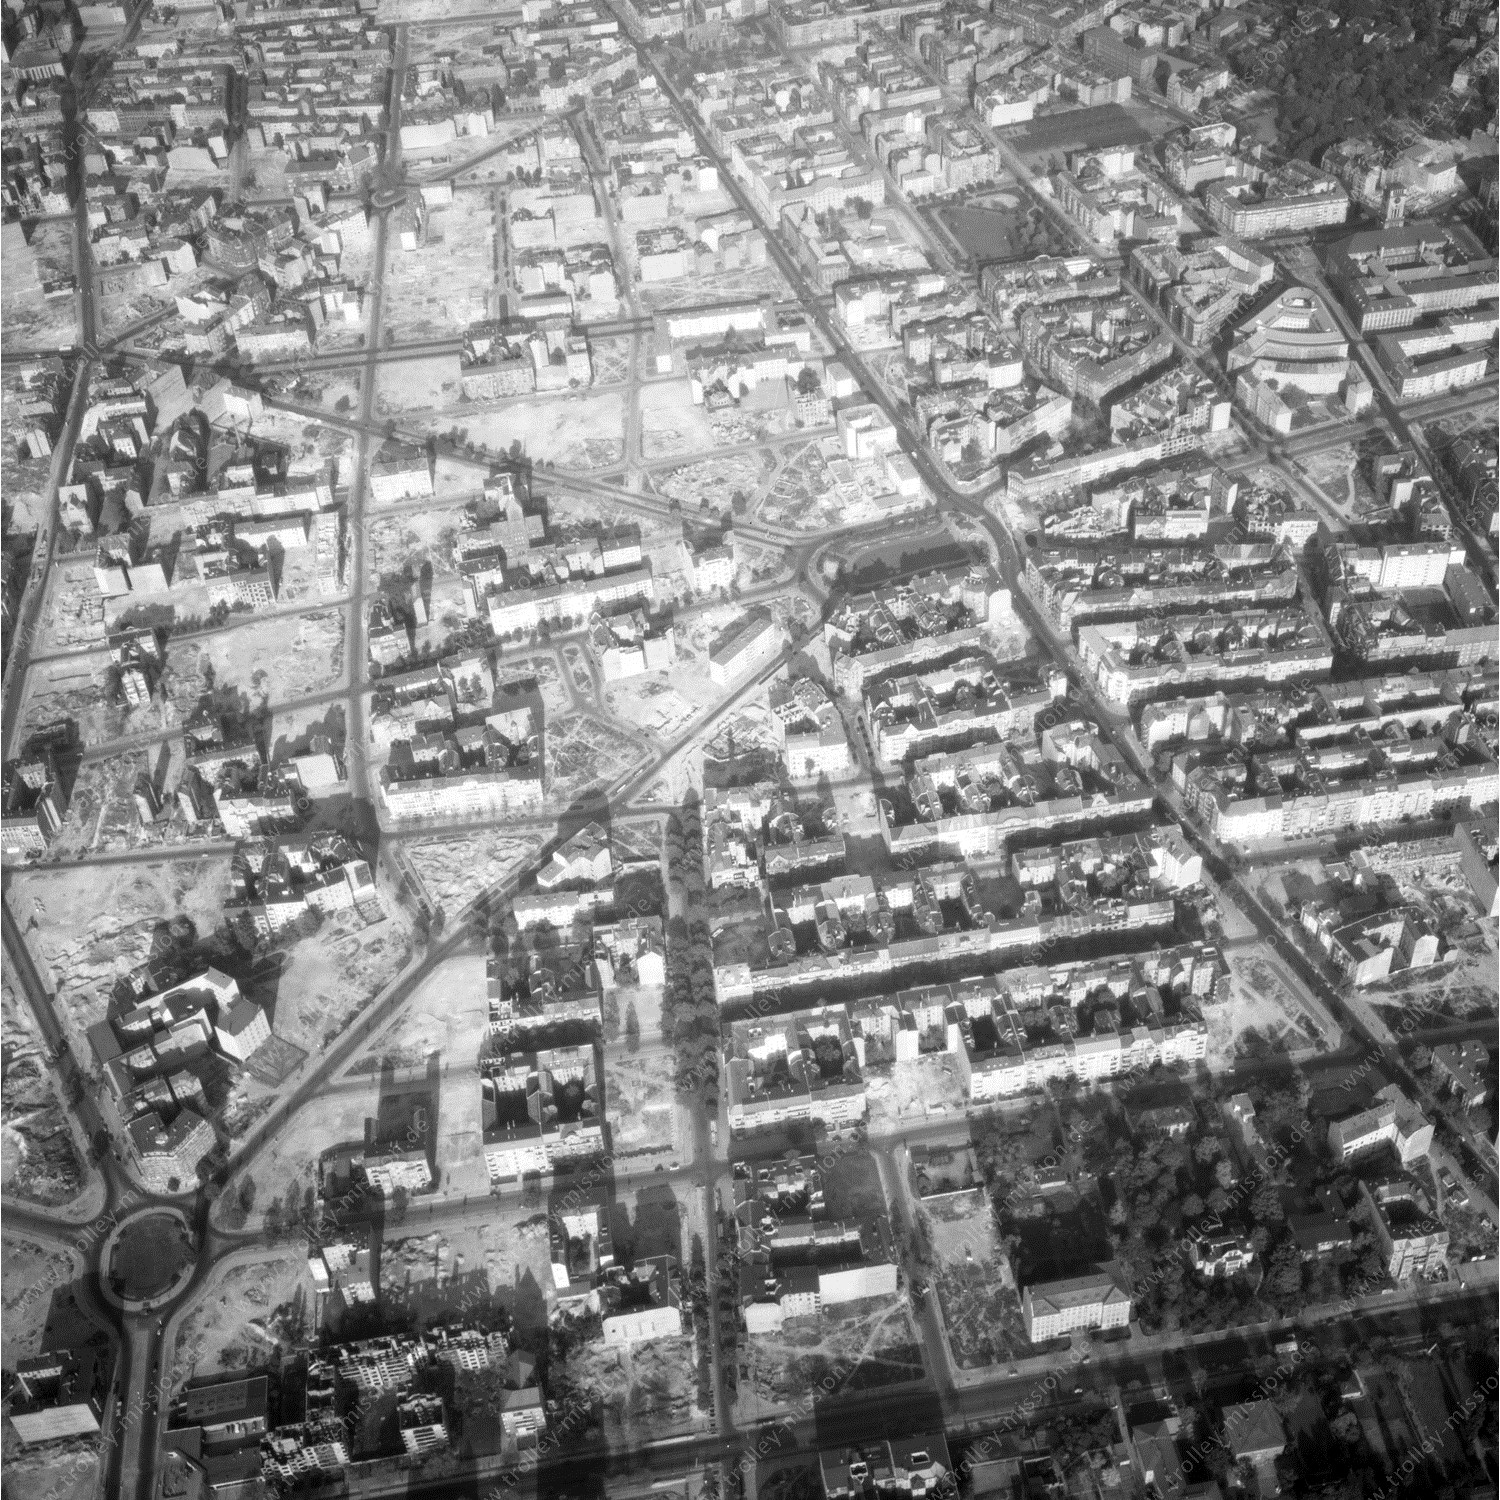 Alte Fotos und Luftbilder von Berlin - Luftbildaufnahme Nr. 05 - Historische Luftaufnahmen von West-Berlin aus dem Jahr 1954 - Flugstrecke Echo